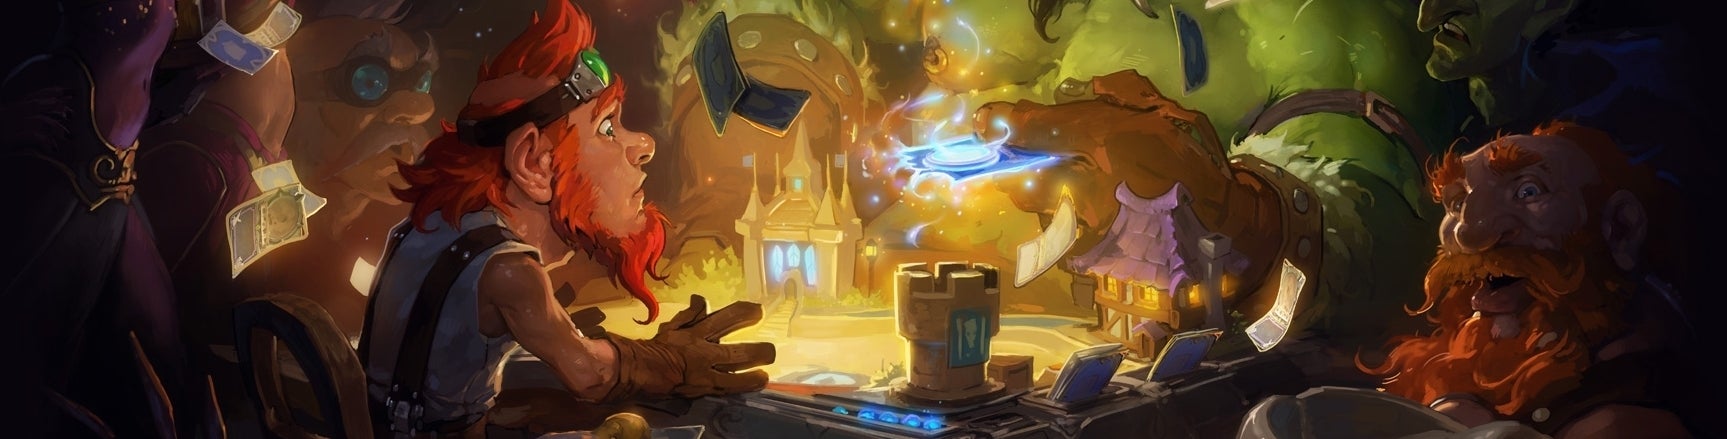 Obrazki dla Hearthstone: Heroes of Warcraft - wrażenia z wersji beta